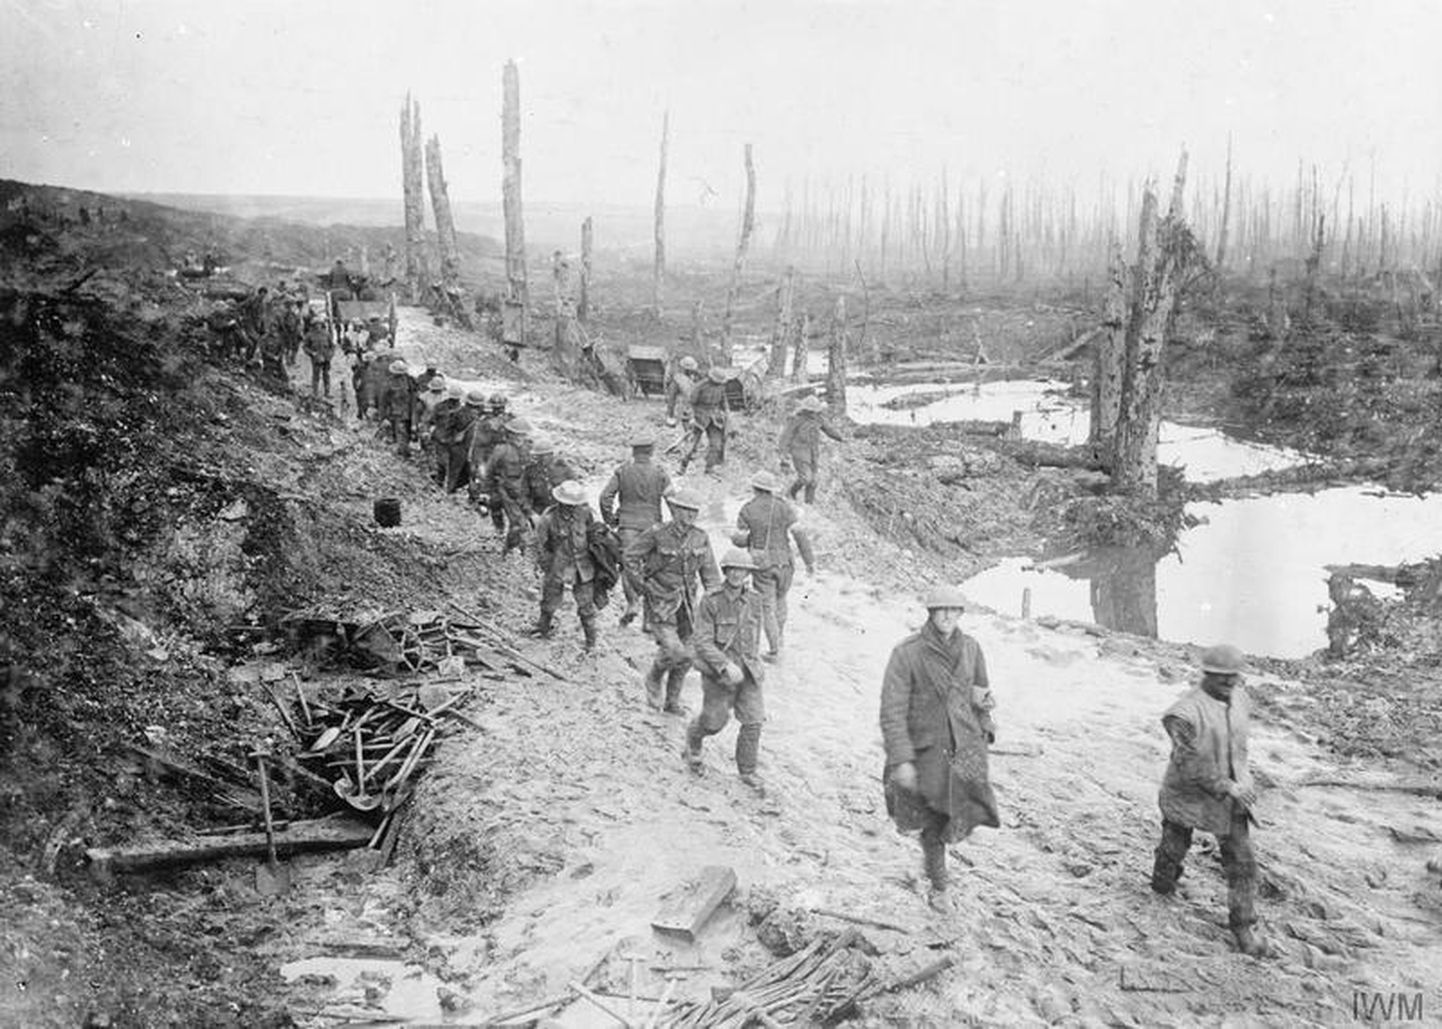 Briti väeüksus Esimese maailmasõja kõige suuremate kaotustega Somme'i lahingu päevil. Väidetavalt moodustasid siis 40% brittide kaotustest sõjaneuroosid. Foto 1916. aasta oktoobrist.